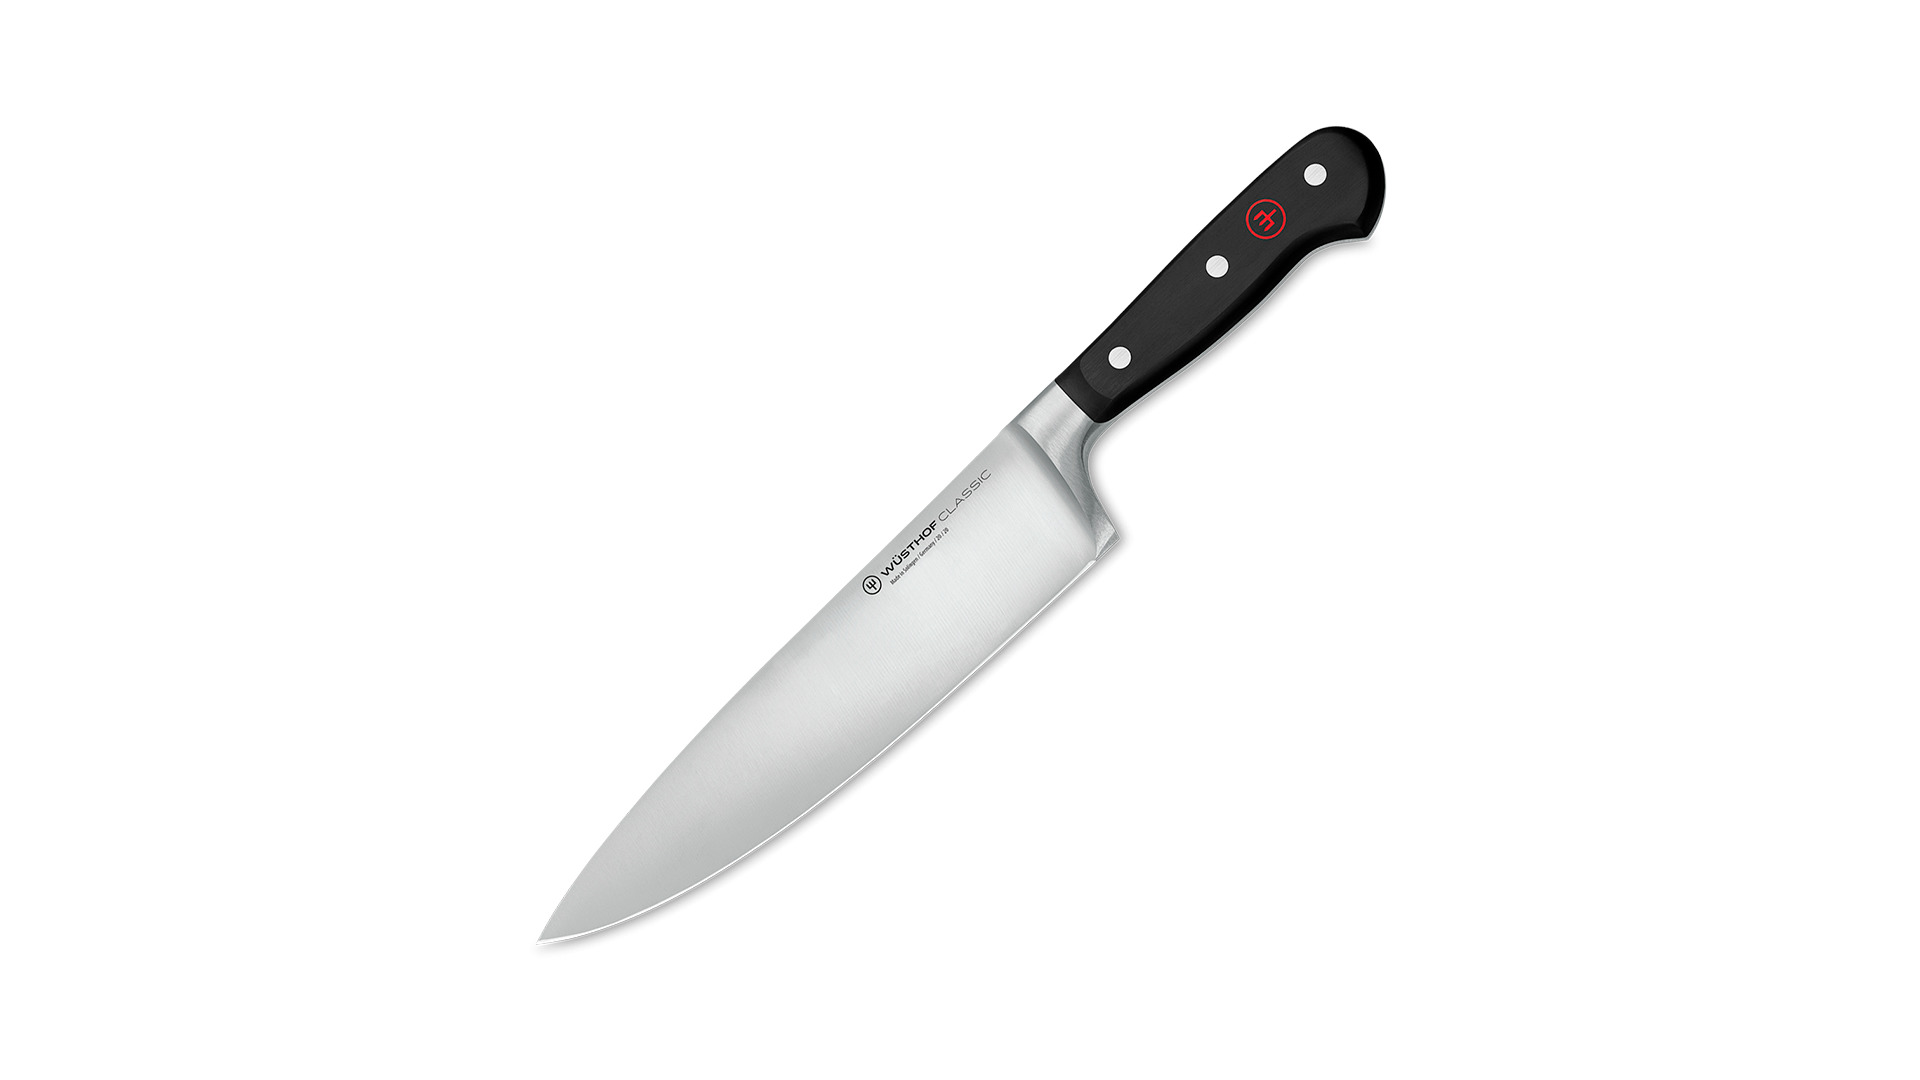 Нож профессиональный Шеф Wuesthof Classic 20 см, в подарок подставка для ножей, темный бук